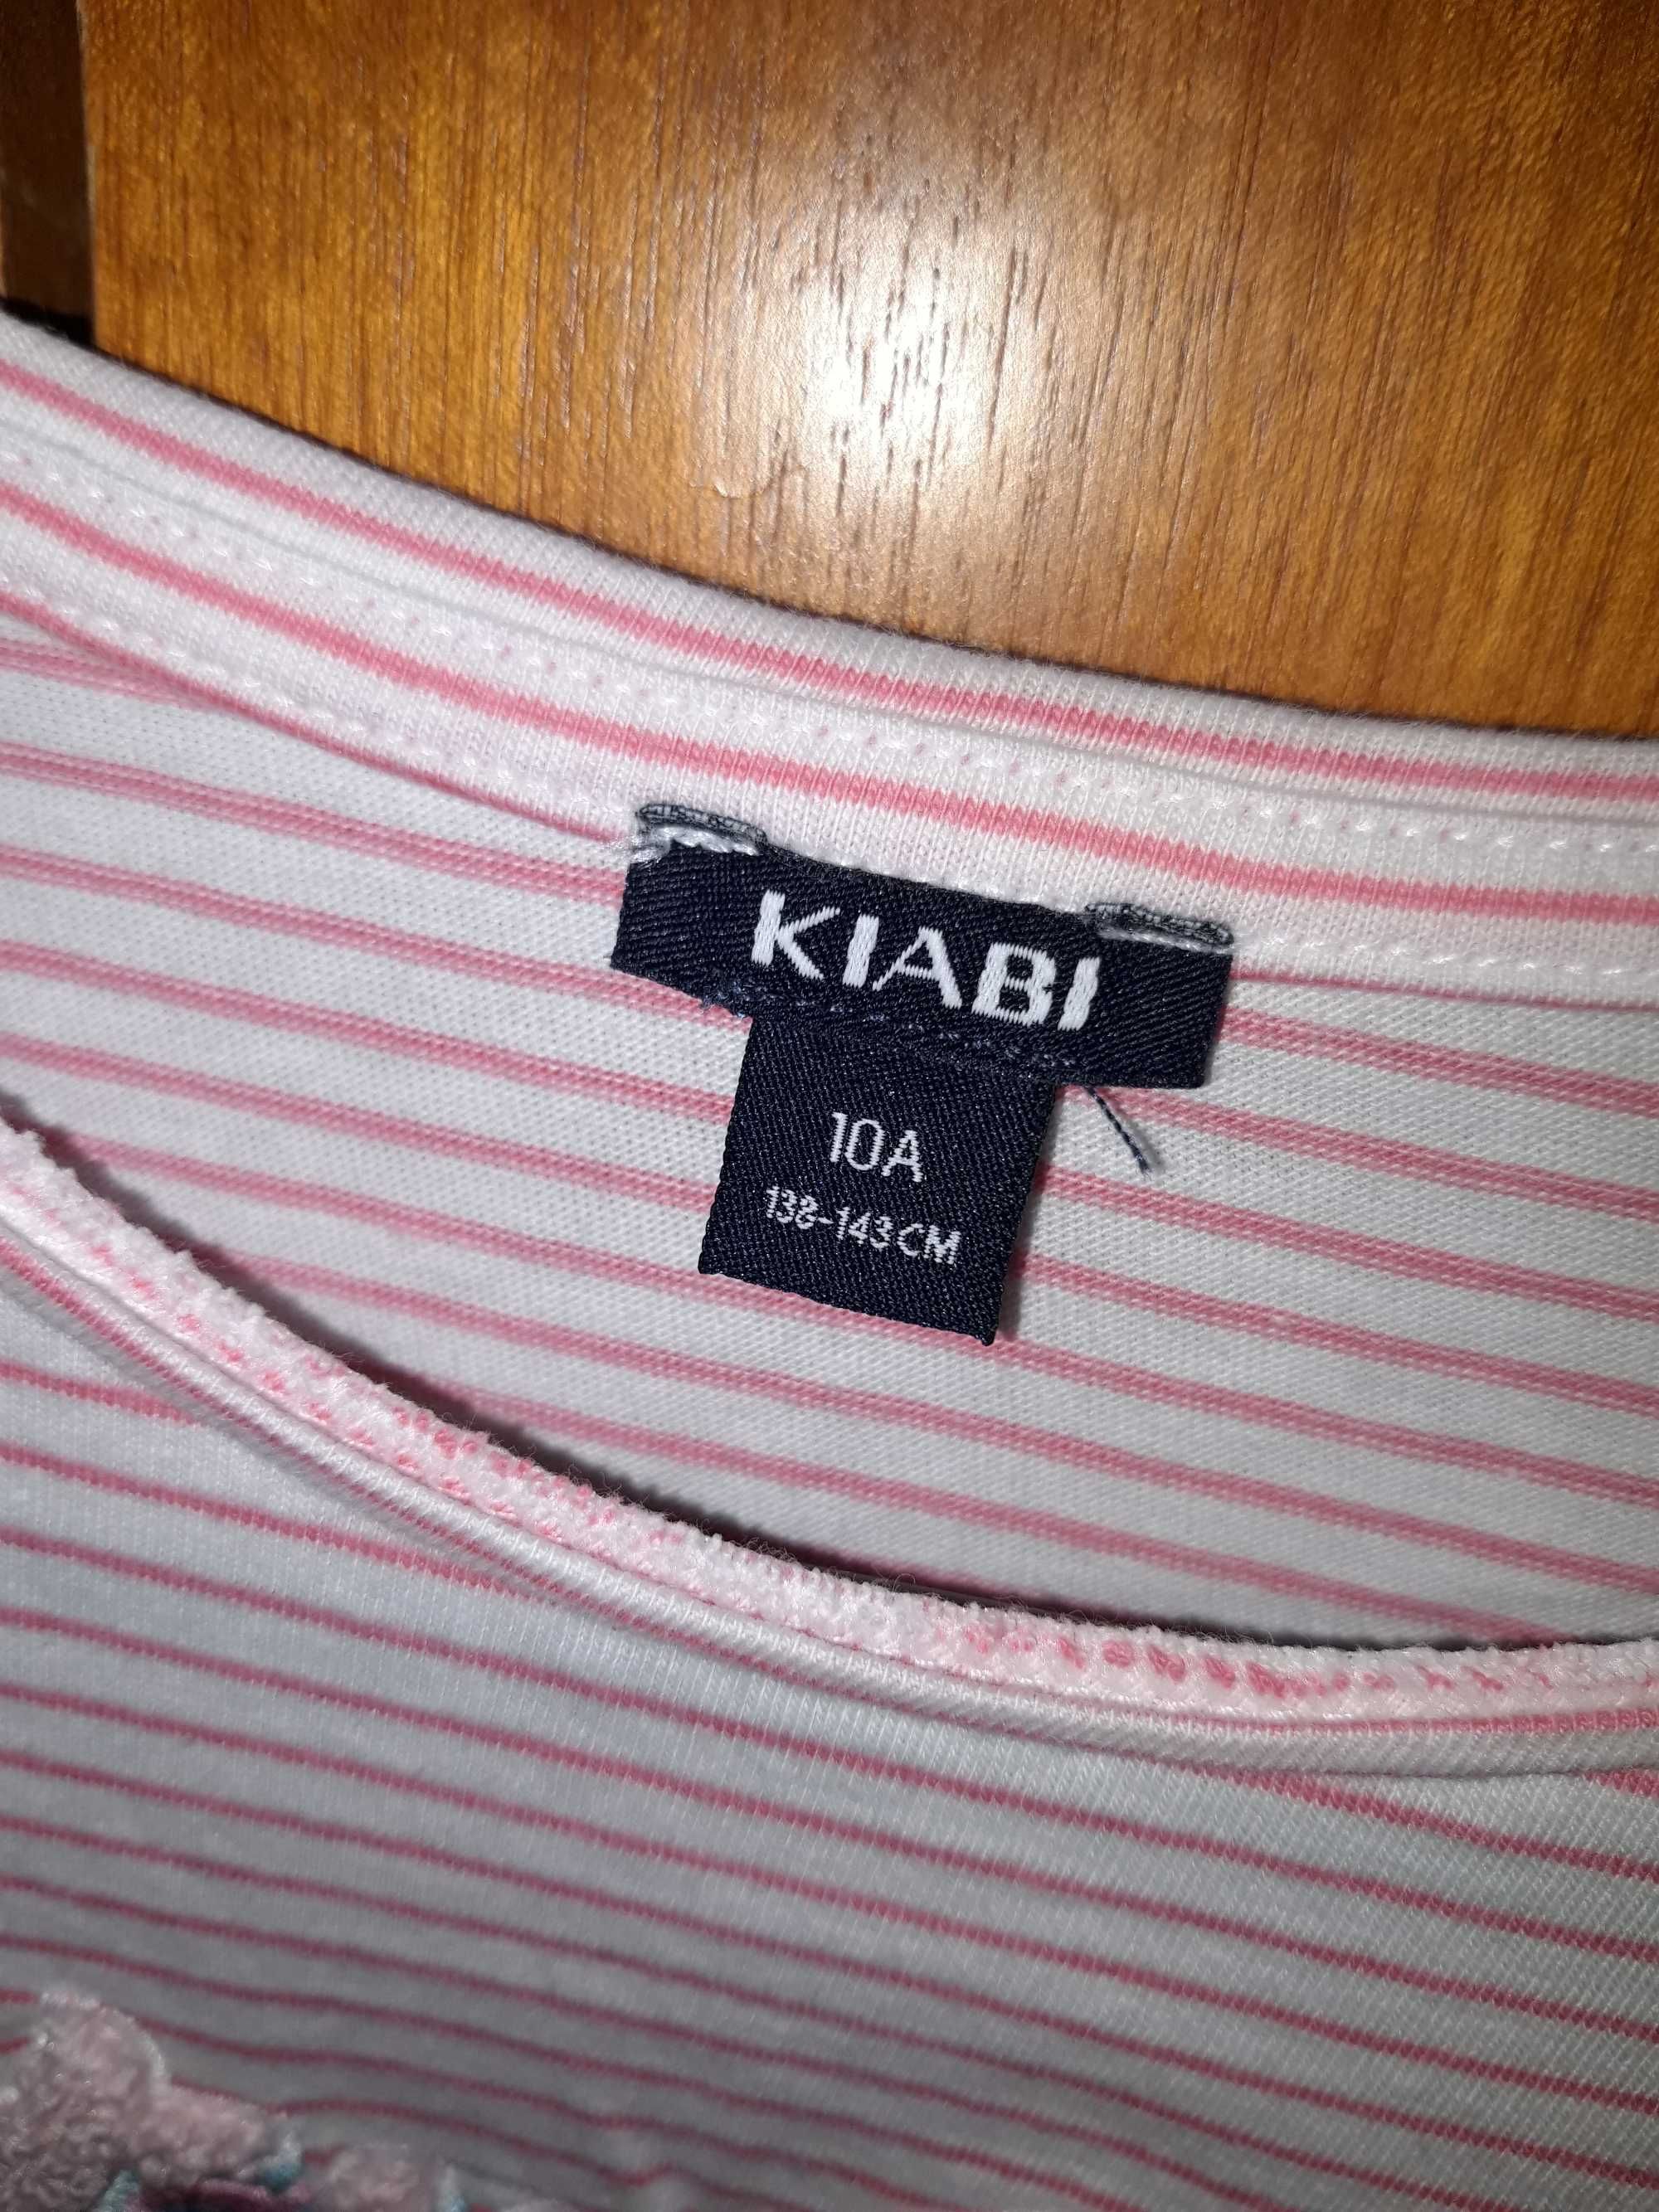 Tshirt riscas rosa e branca, Kiabi 10 anos como nova